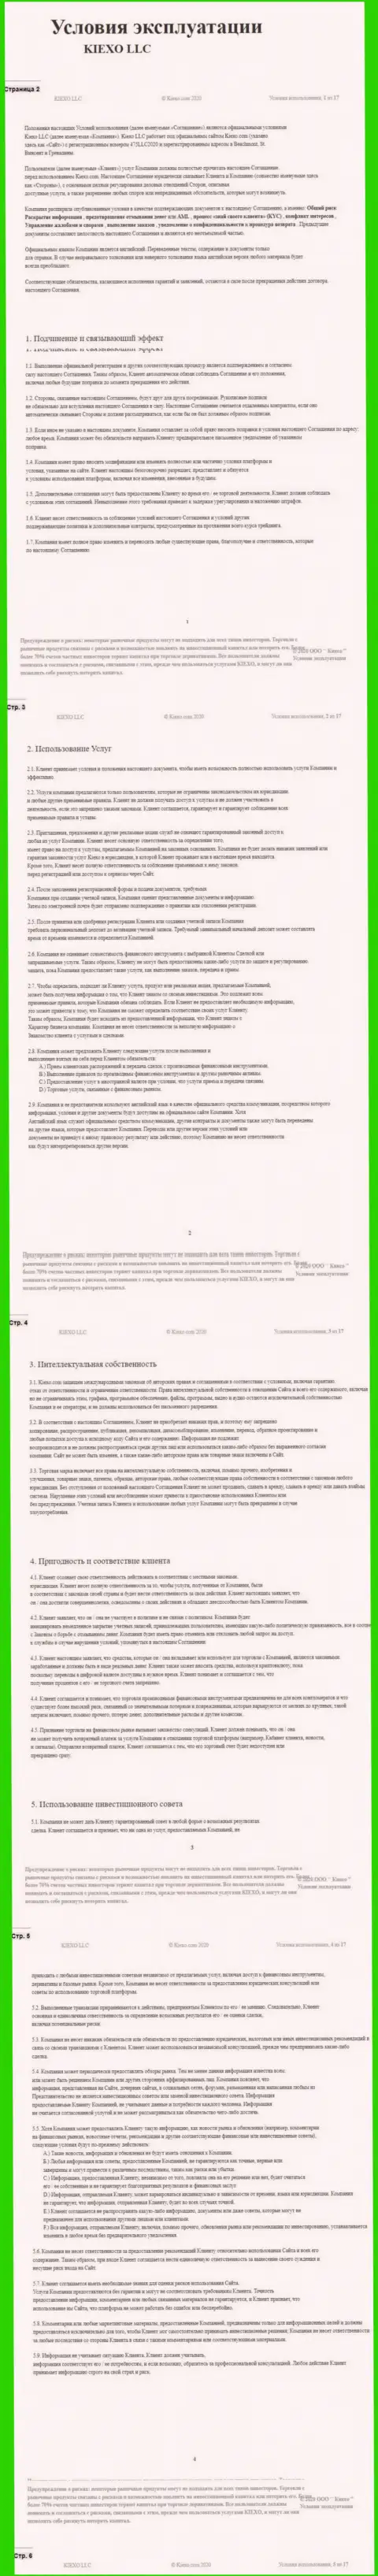 Пользовательское соглашение Форекс брокерской компании Киексо (часть 1)